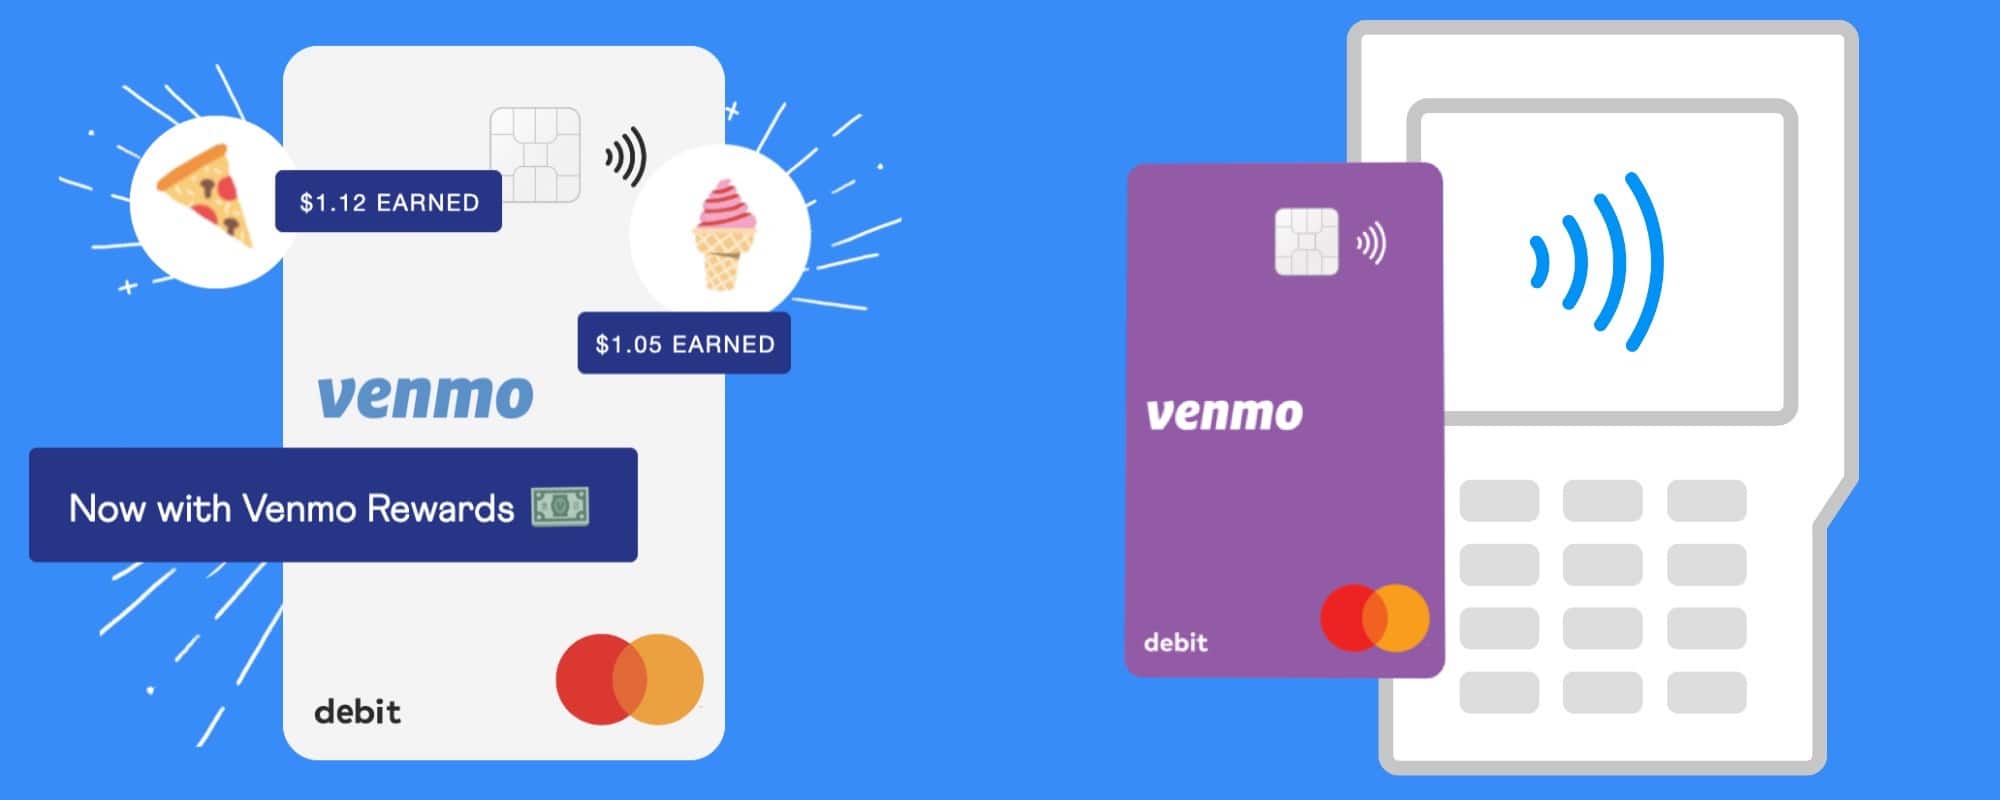 Venmo app and debit card